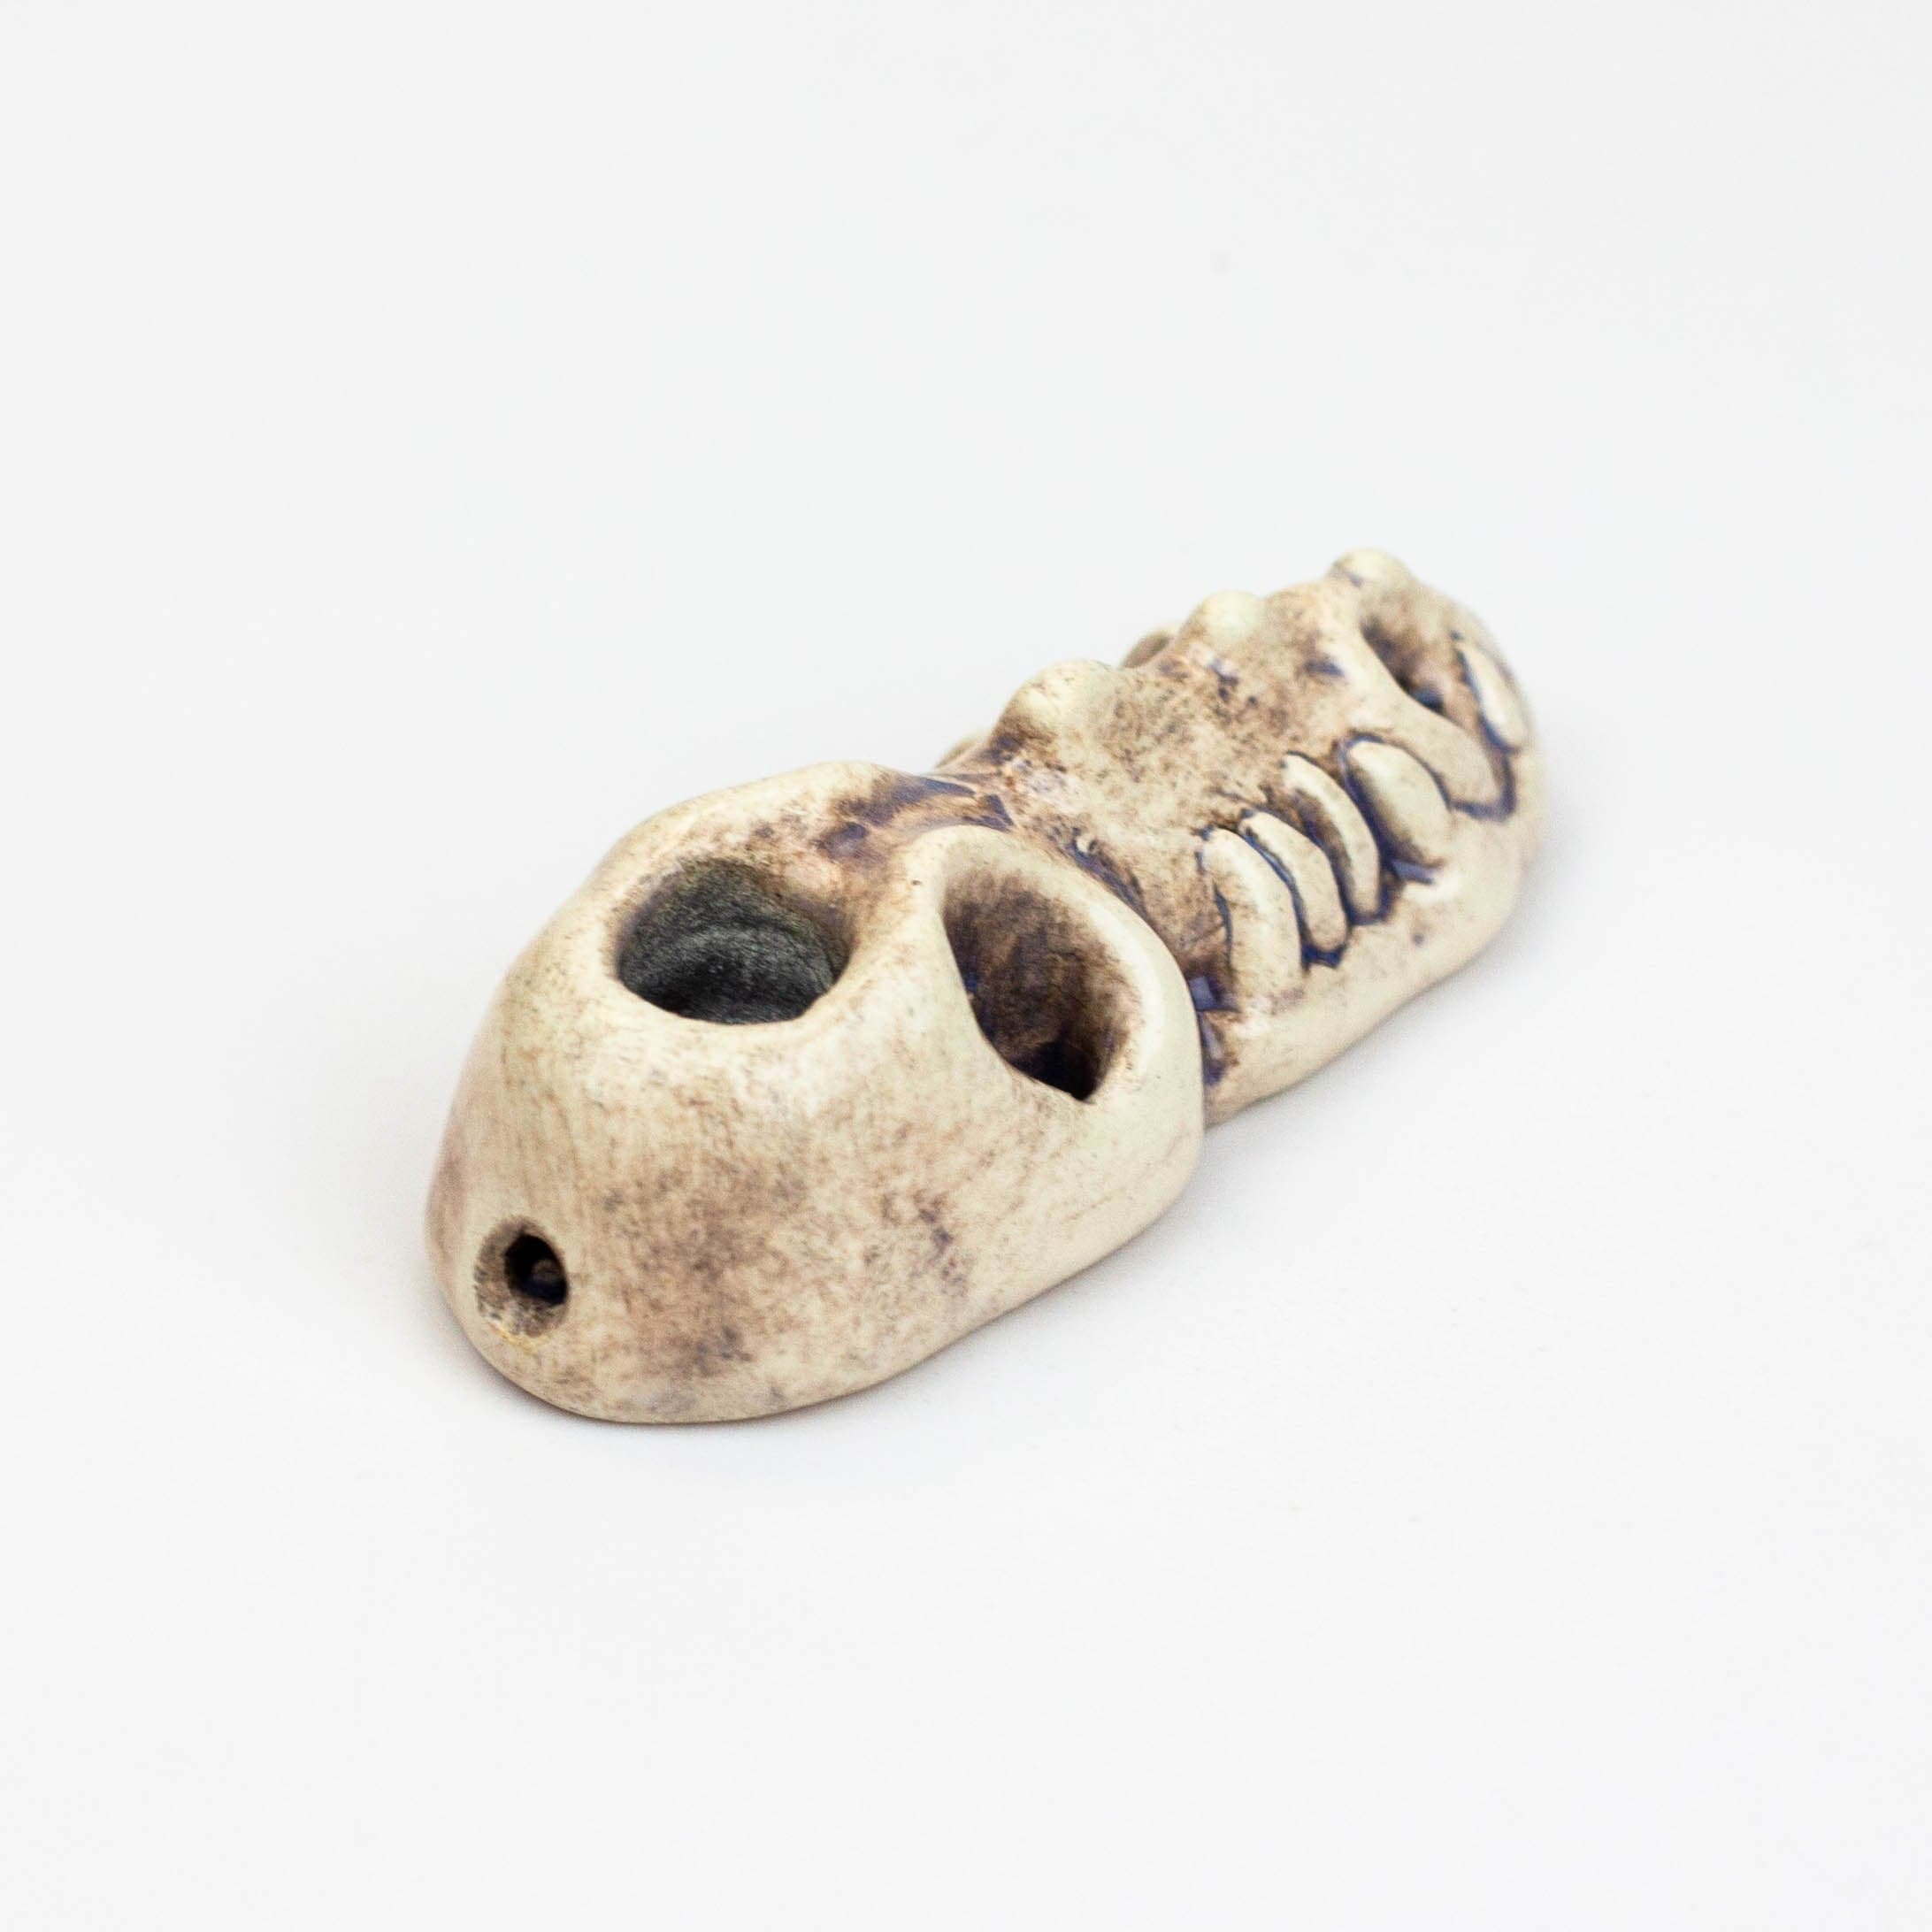 Handmade ceramic smoking pipe mini gator_2